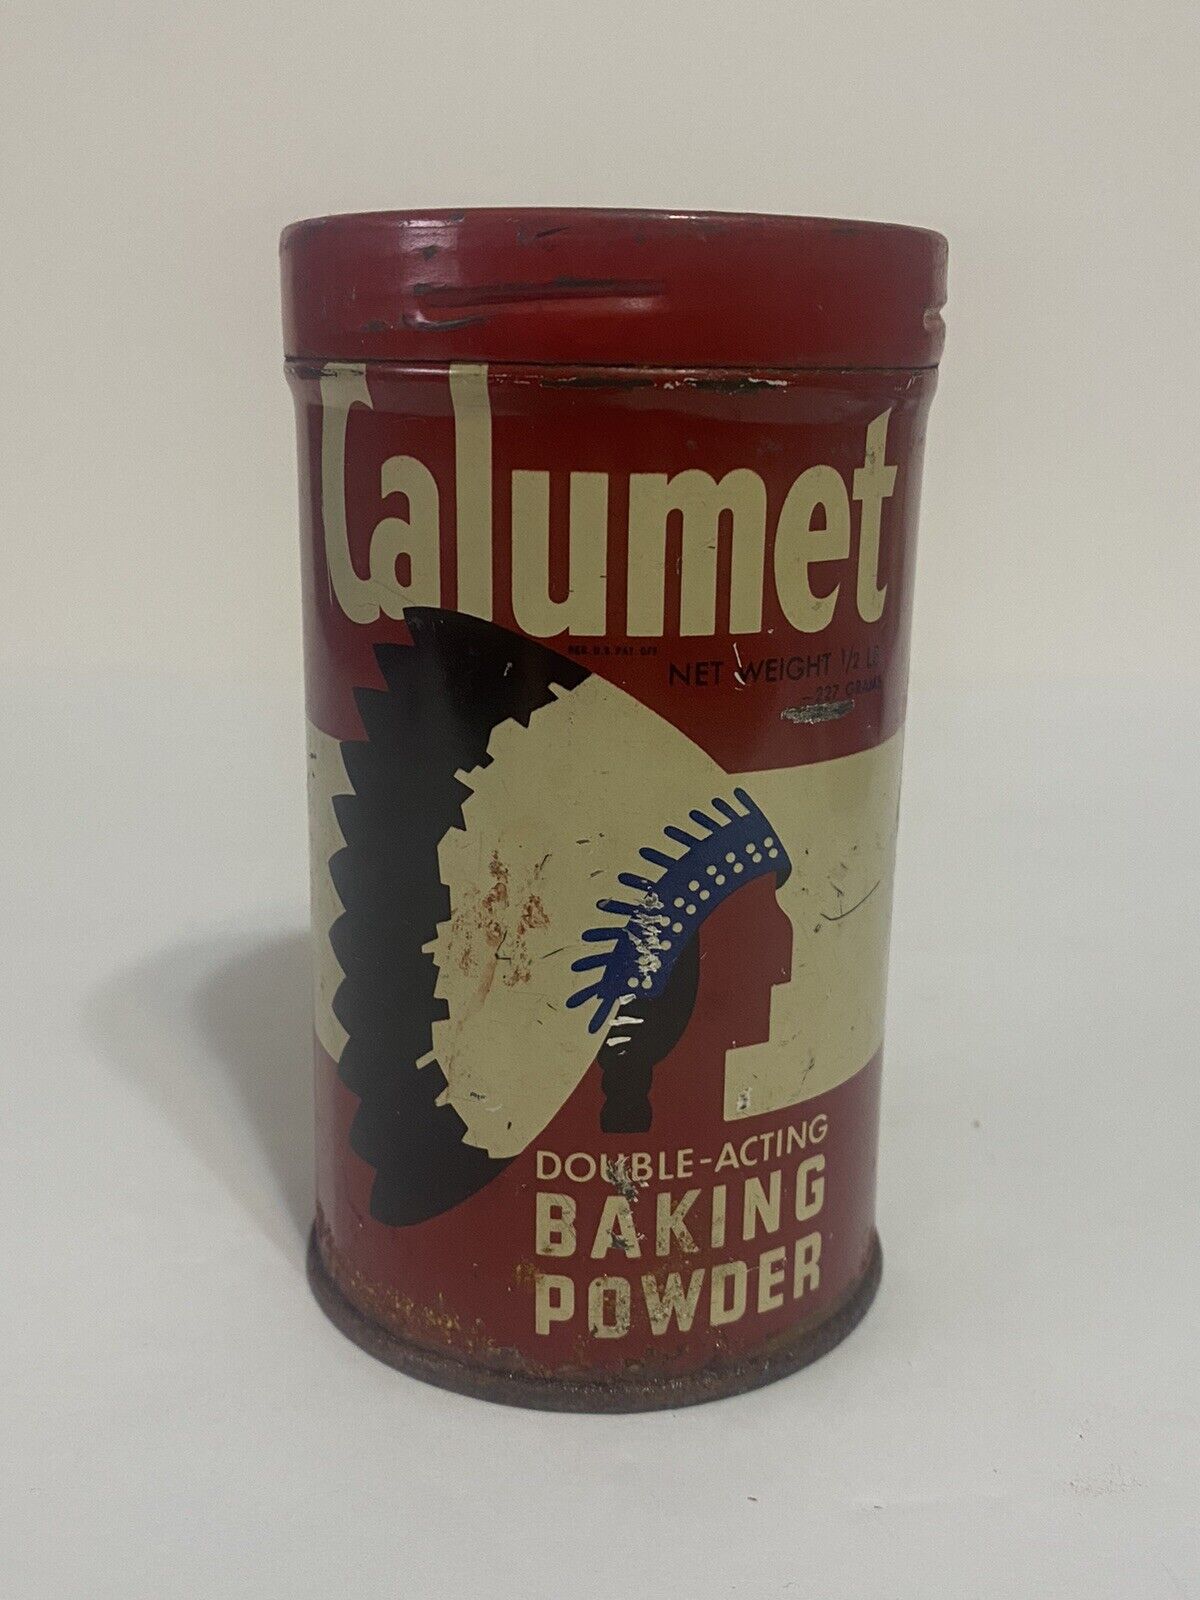 Vintage CALUMET Baking Powder Tin Empty